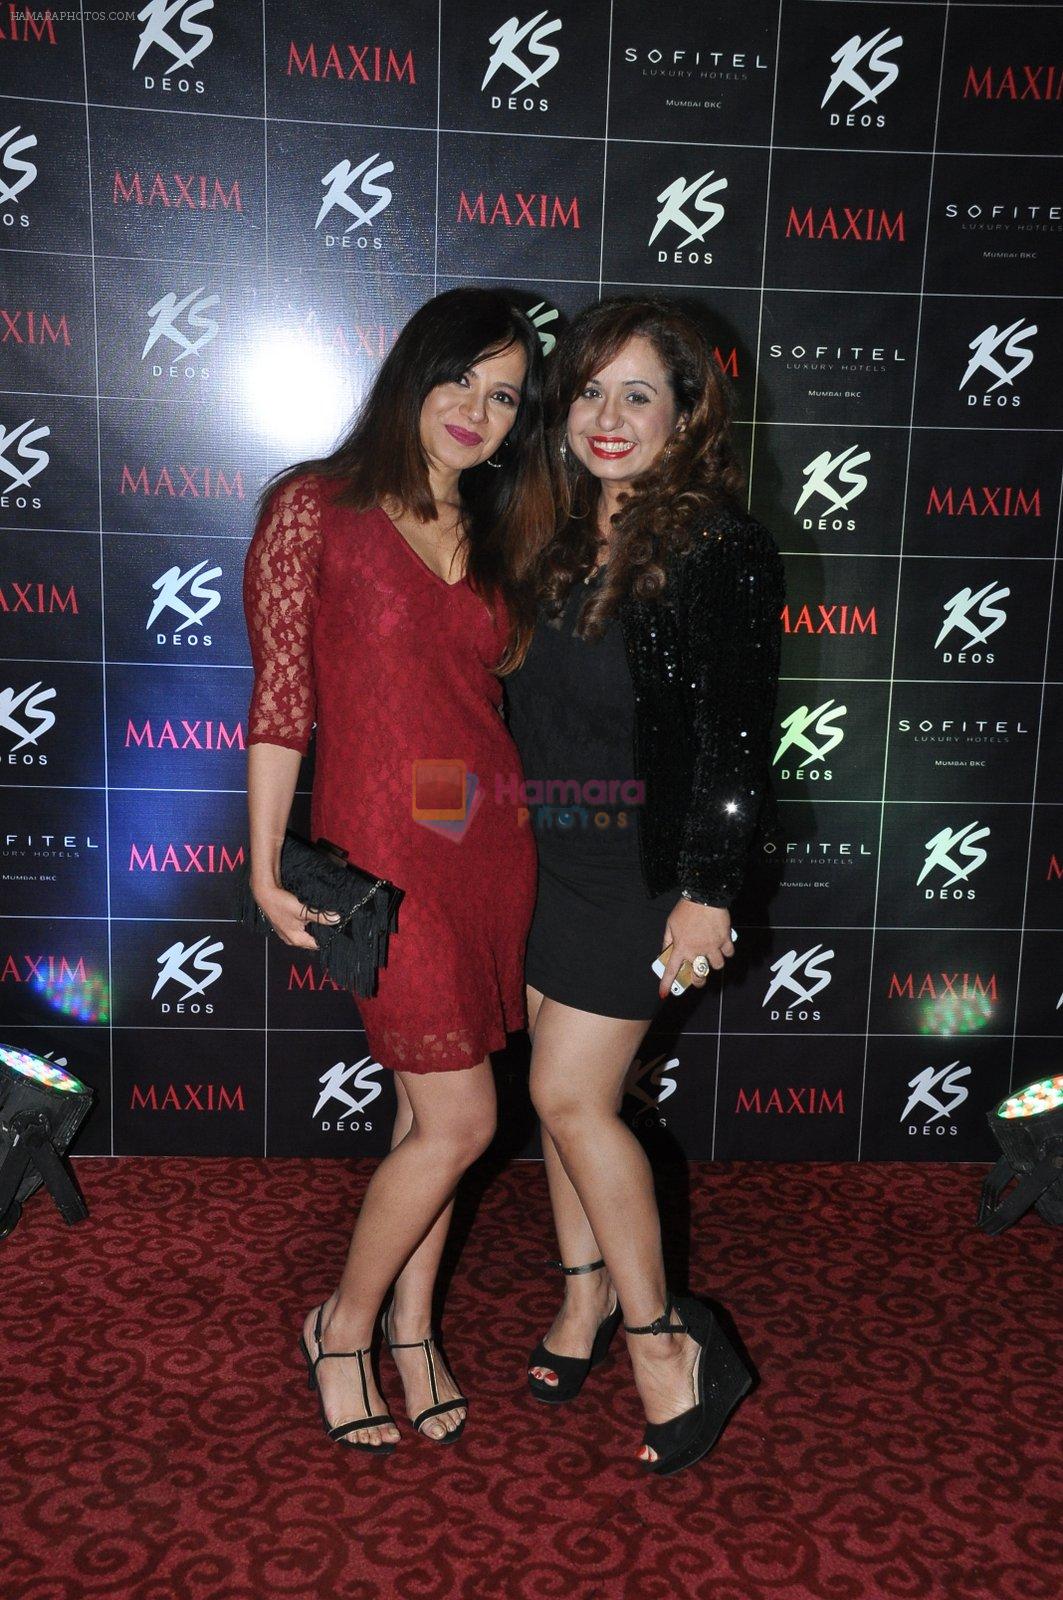 Vandana Sajnani at KS Maxim Girl Contest in Mumbai on 21st Dec 2014